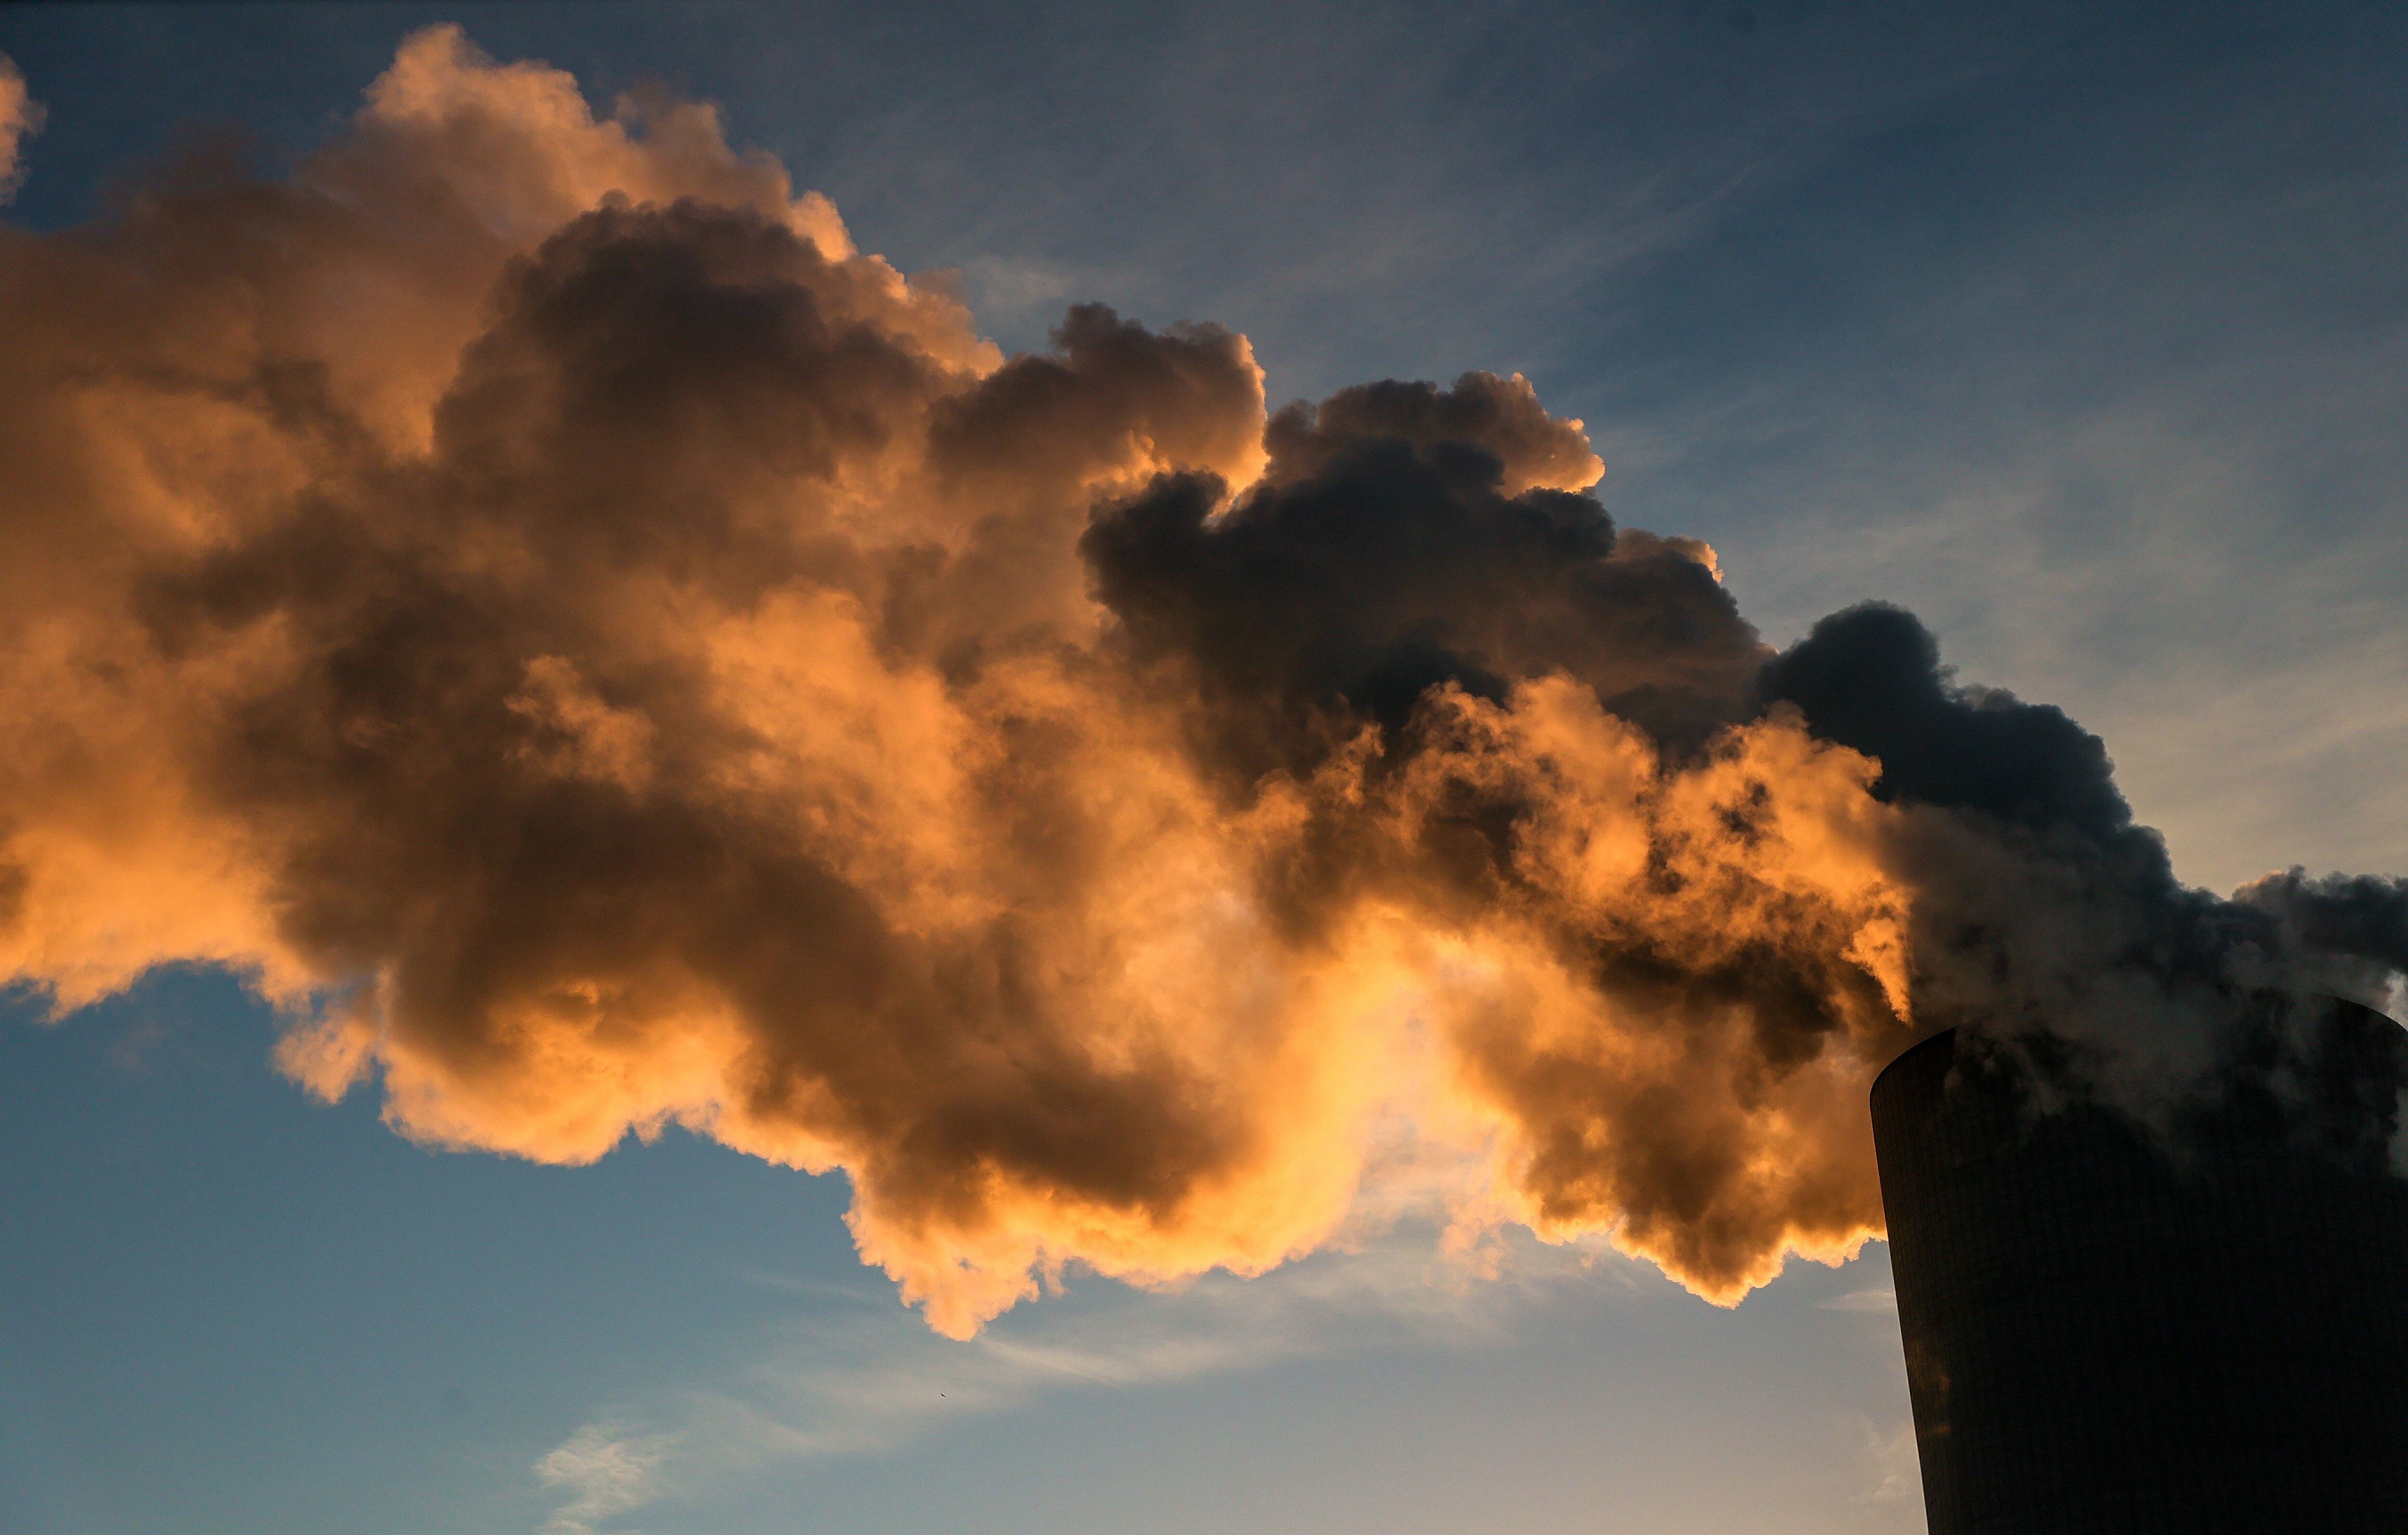 Los principales agentes de contaminación atmosférica son partículas en suspensión, monóxido de carbono, ozono, dióxido de nitrógeno y dióxido de azufre, informa la OMS /EFE/EPA/FRIEDEMANN VOGEL 